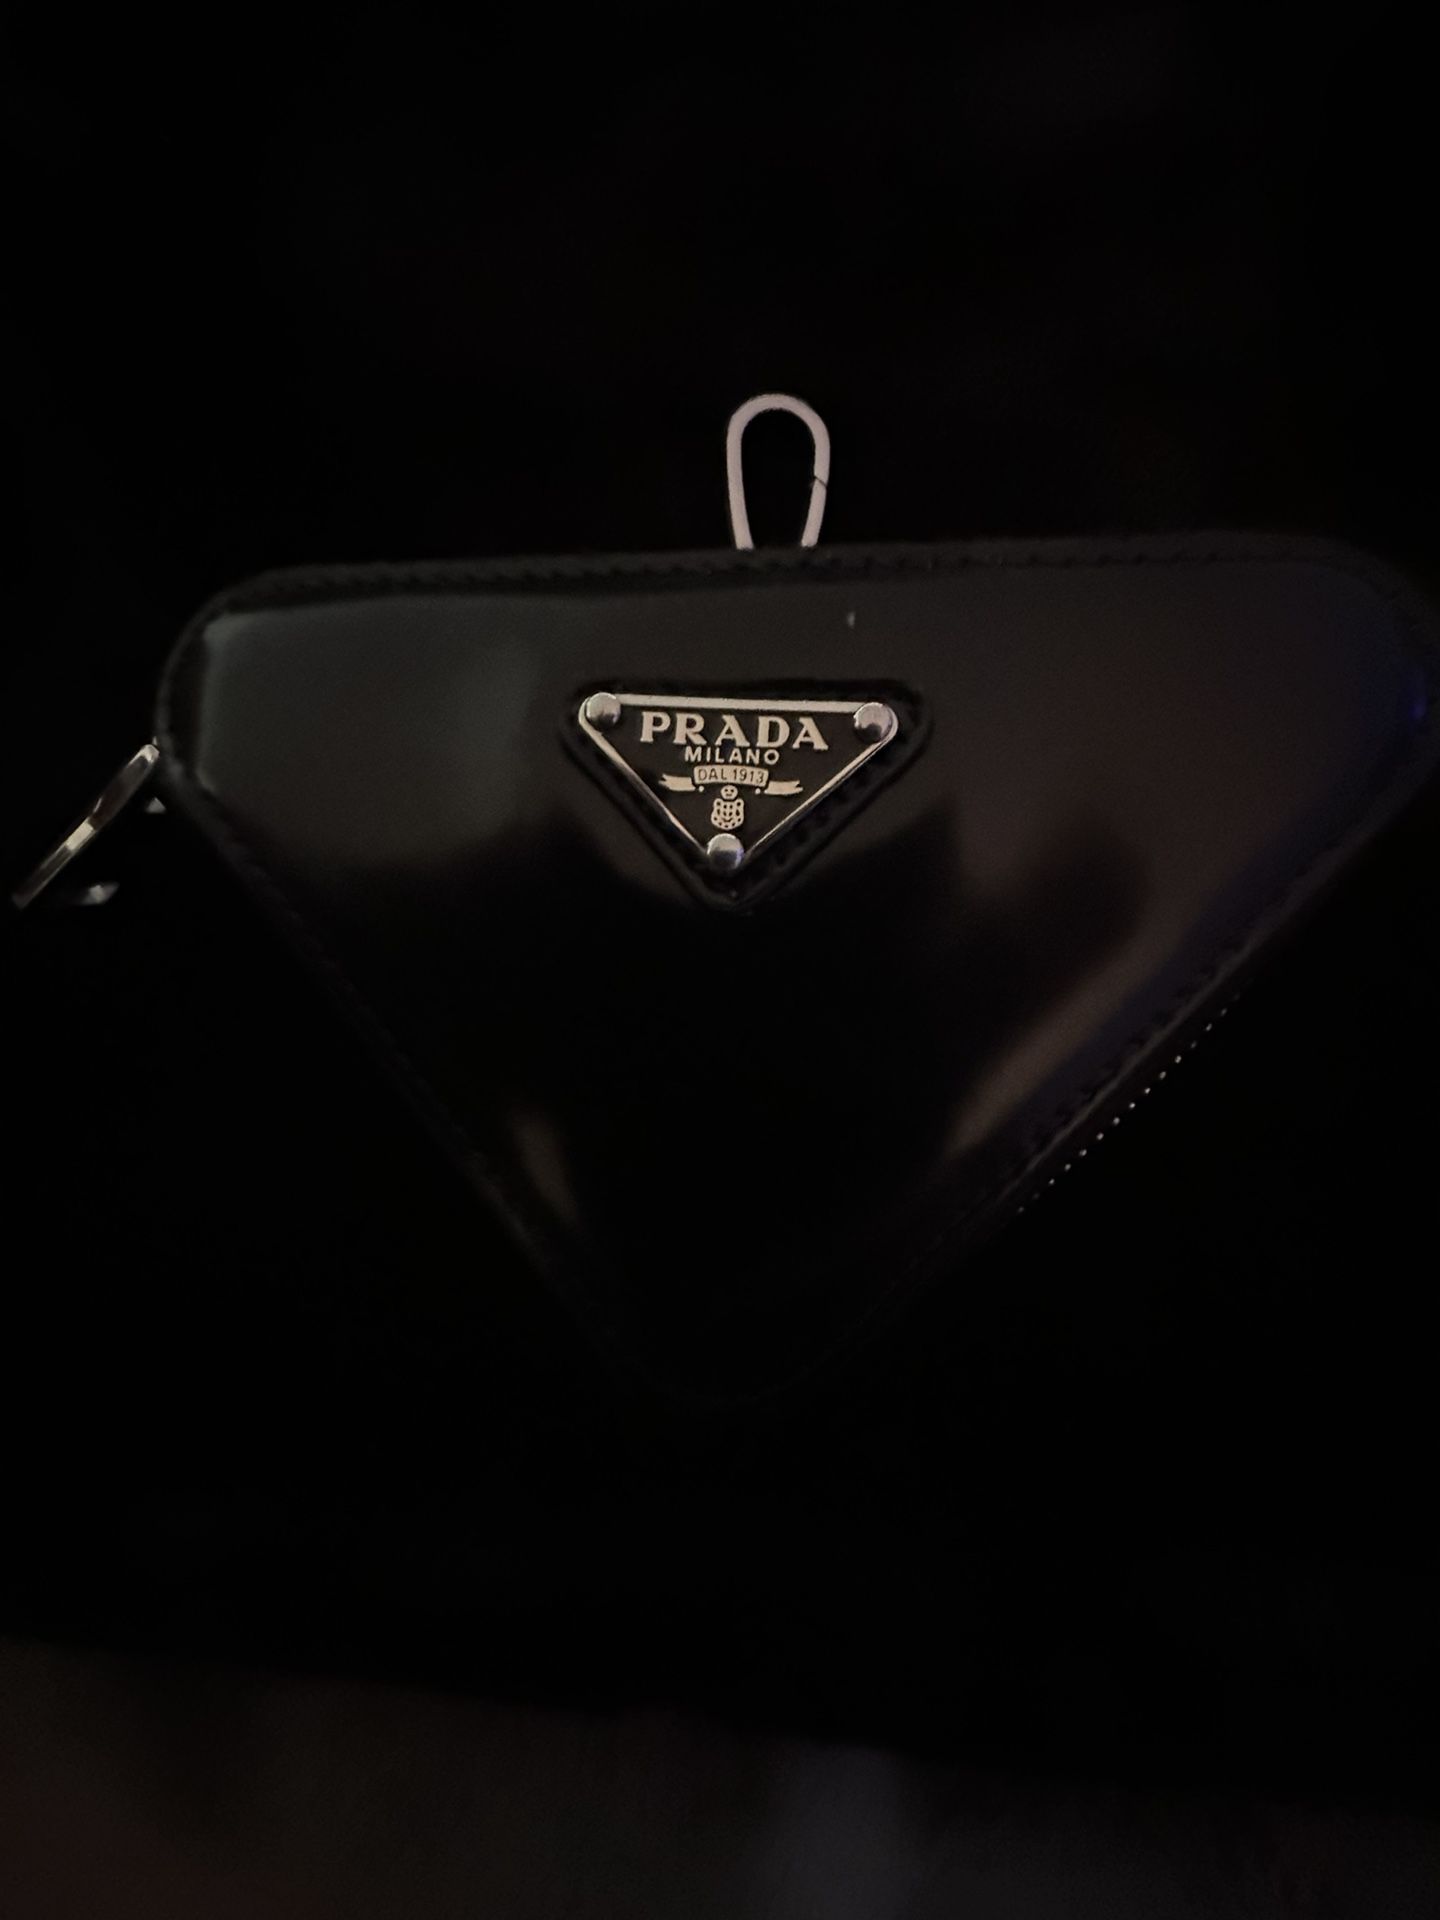 Prada Saffiano Small Camera Bag for Sale in Chula Vista, CA - OfferUp